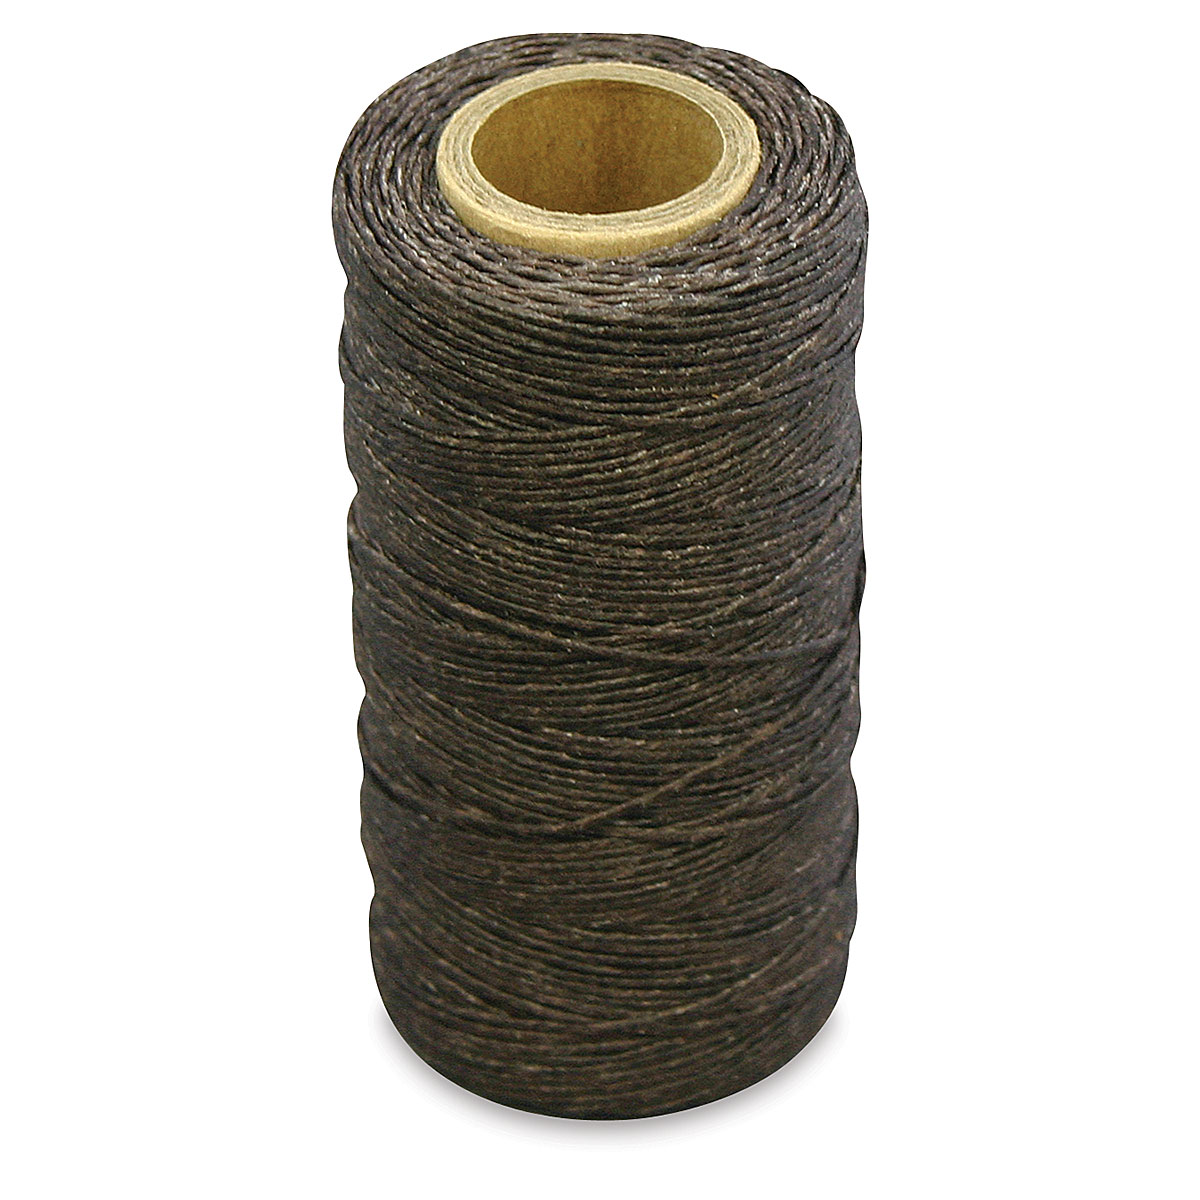 Wild Olive: adventures in making thread wax